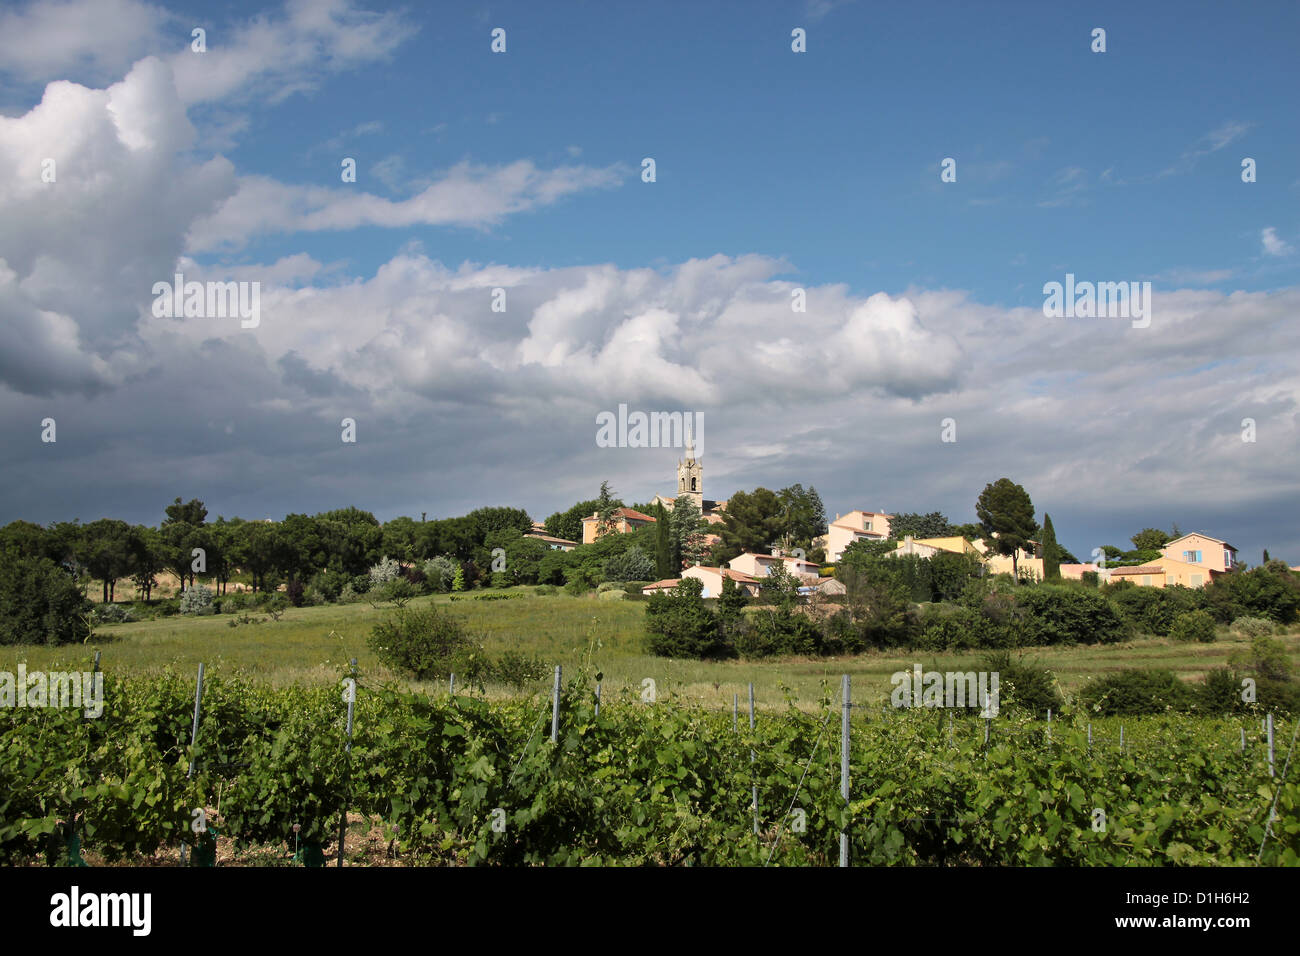 Le village de Villars dans la Provence dans le sud de la France Banque D'Images